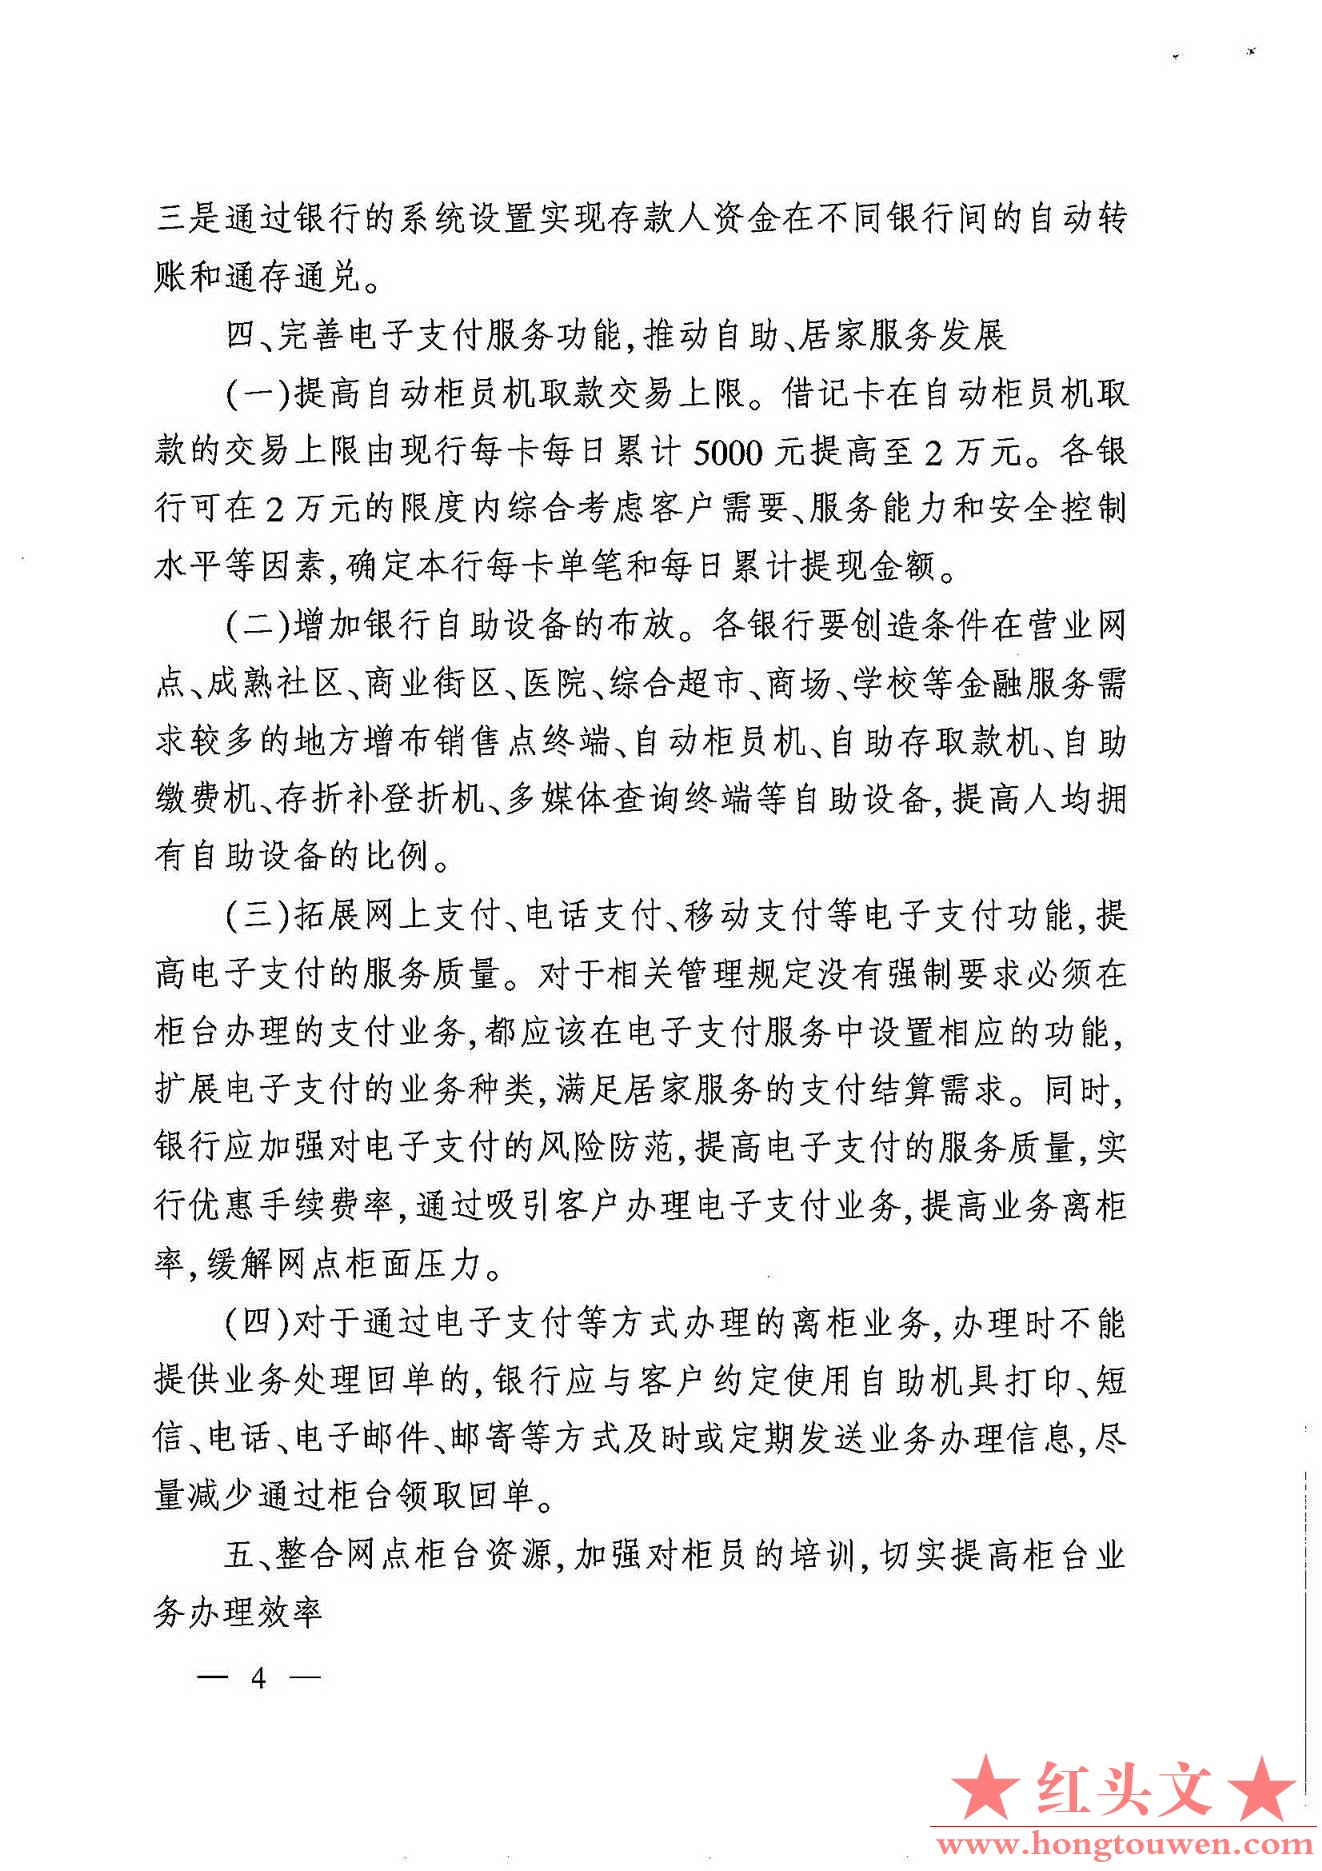 银发[2007]154号-中国人民银行关于改进个人支付结算服务的通知_页面_4.jpg.jpg